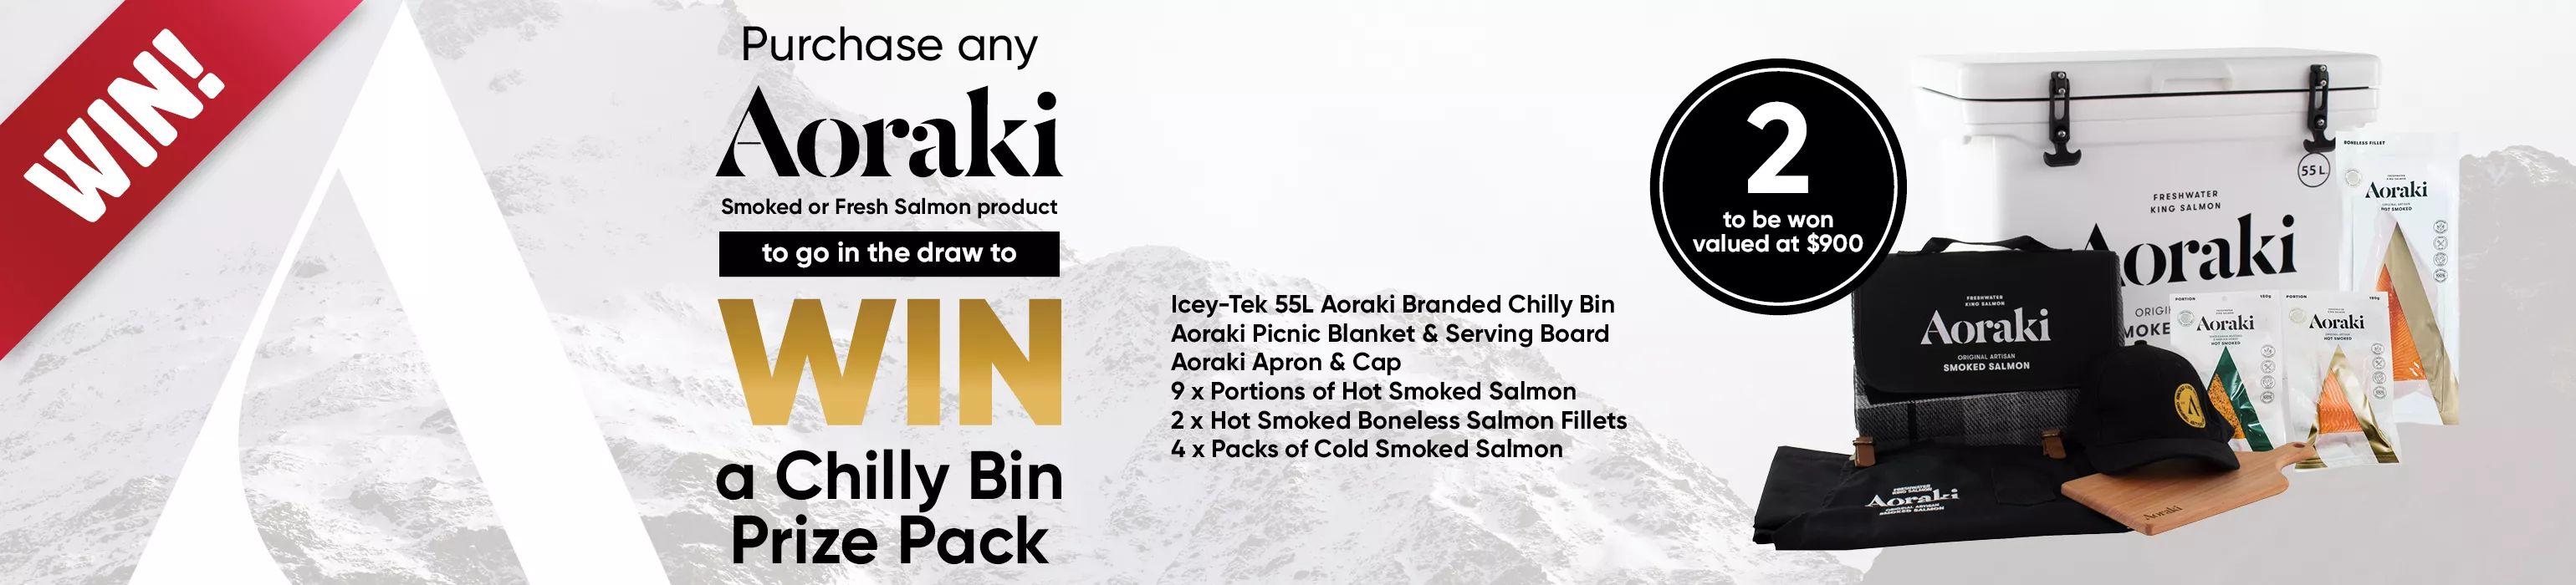 Be in to WIN with Aoraki Salmon!